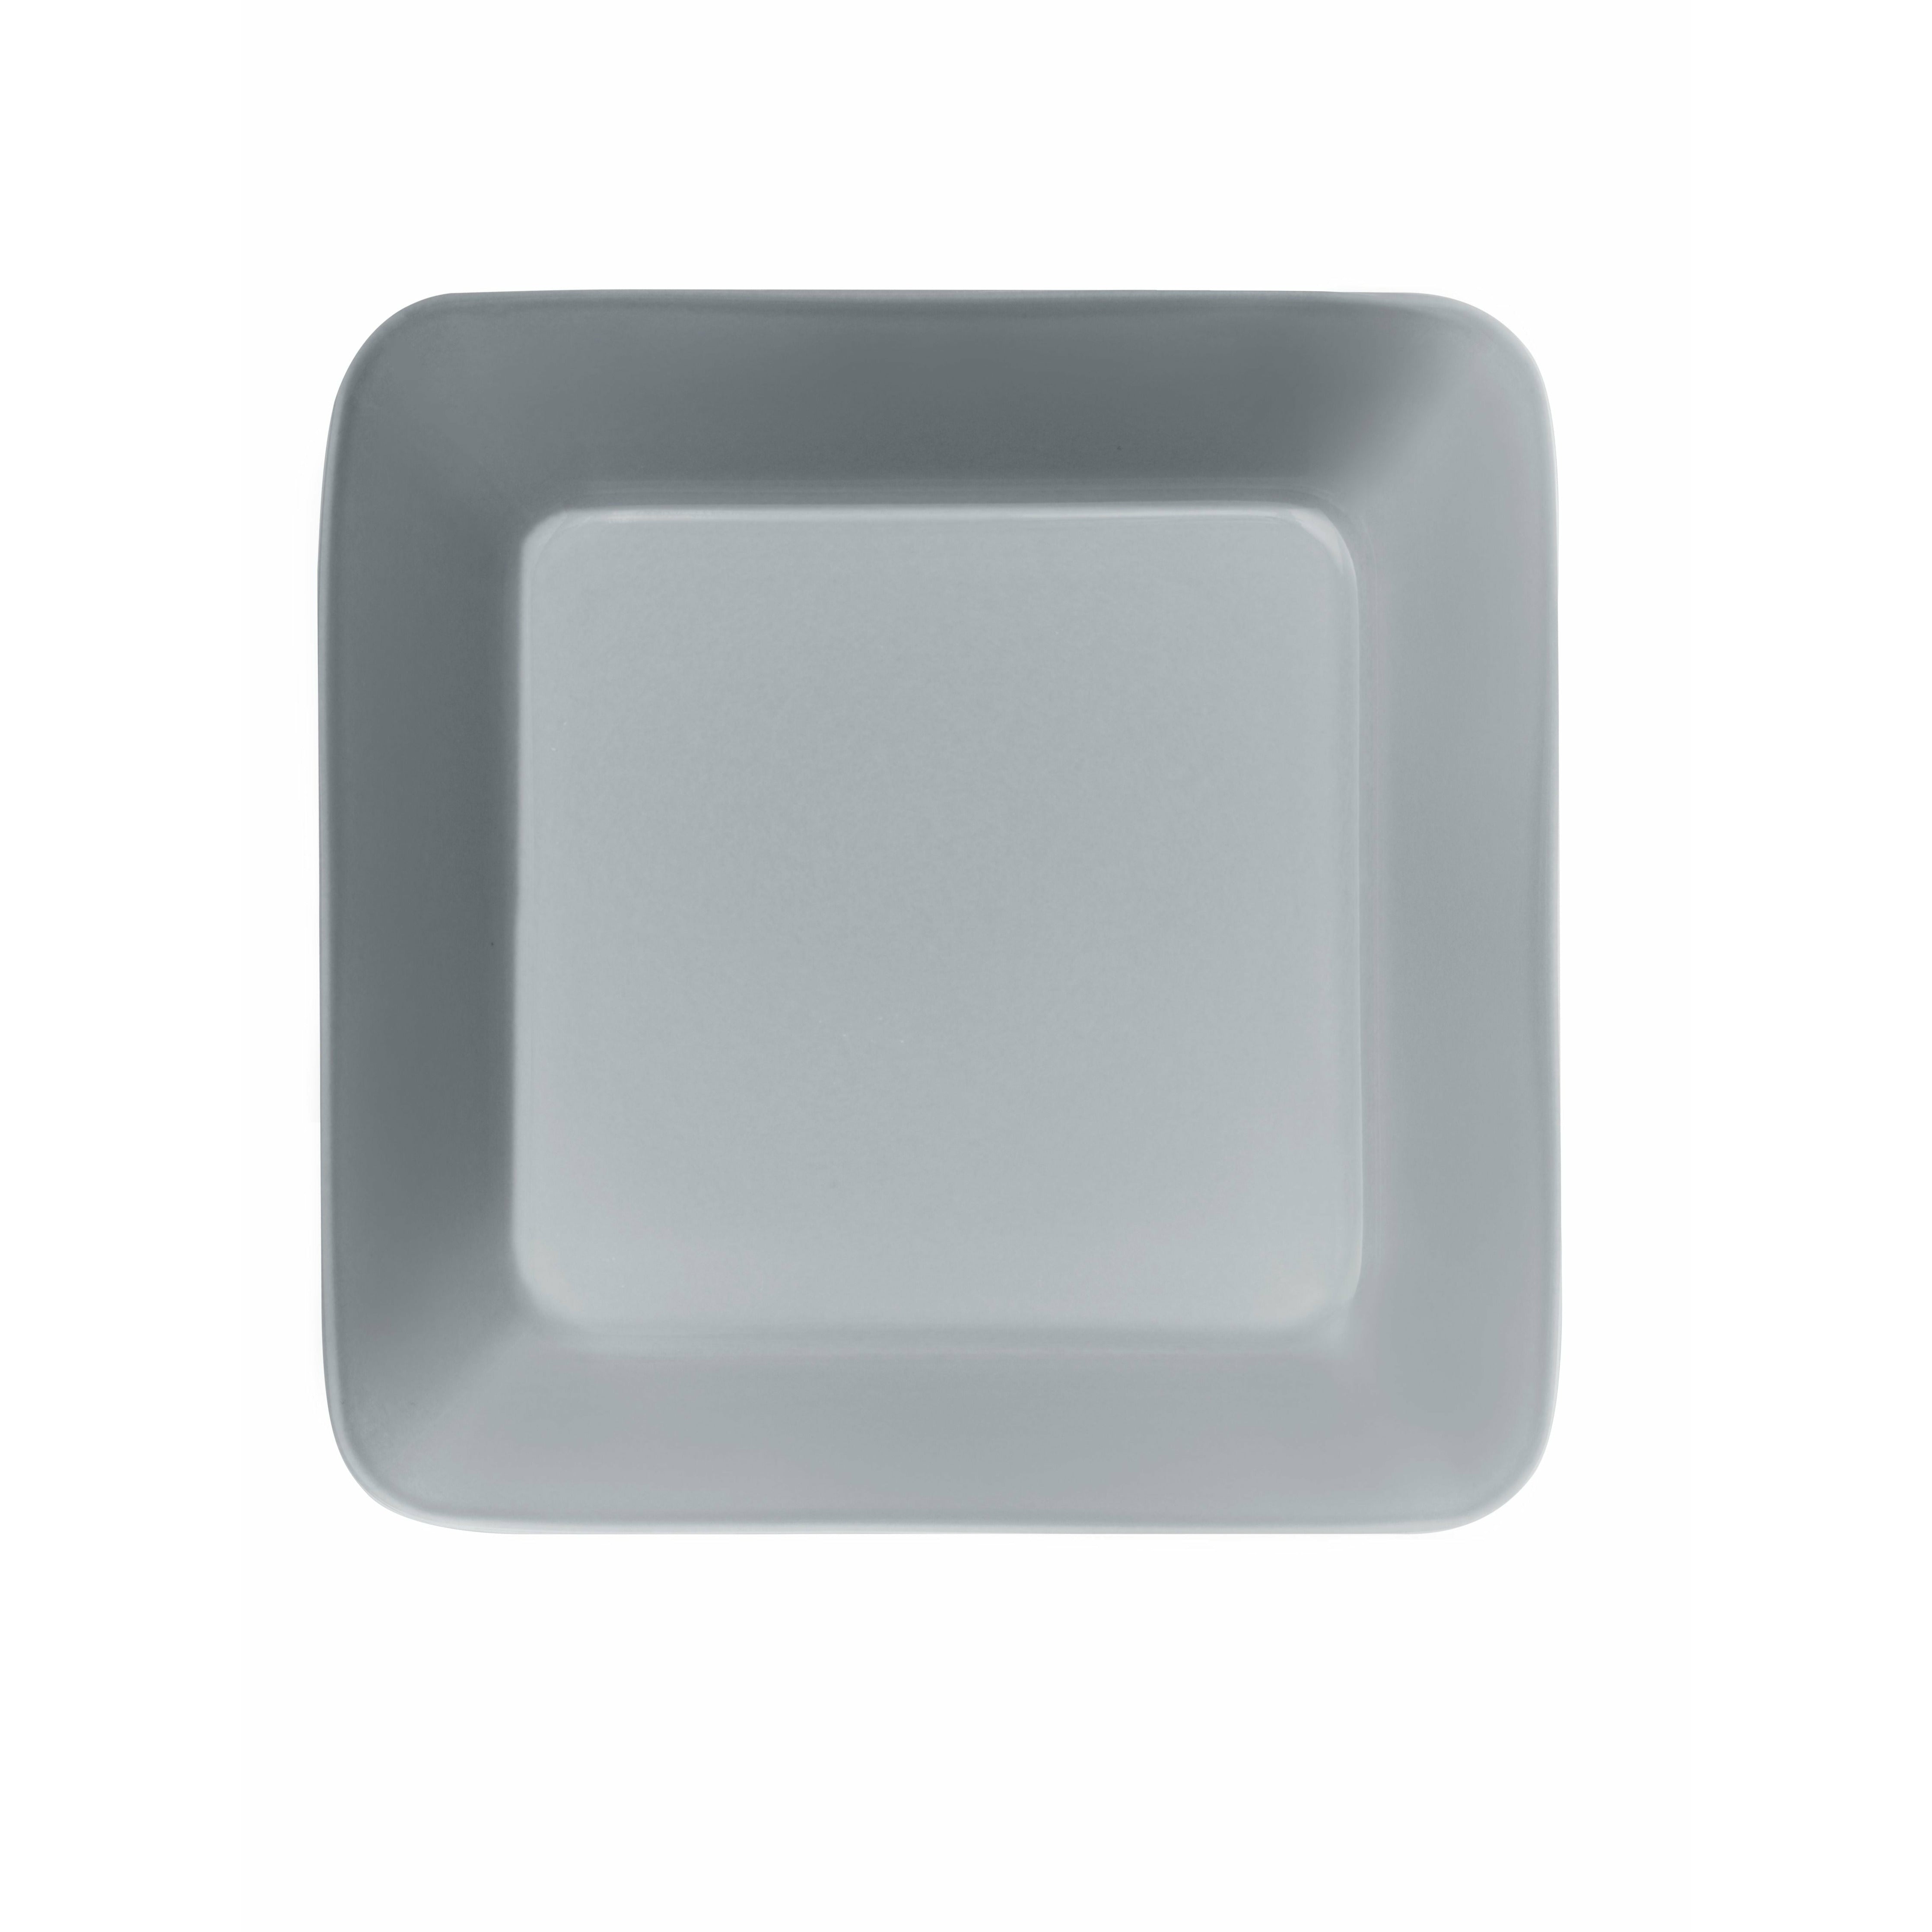 Iittala Teema Plate 16x16cm, Pearl Gray